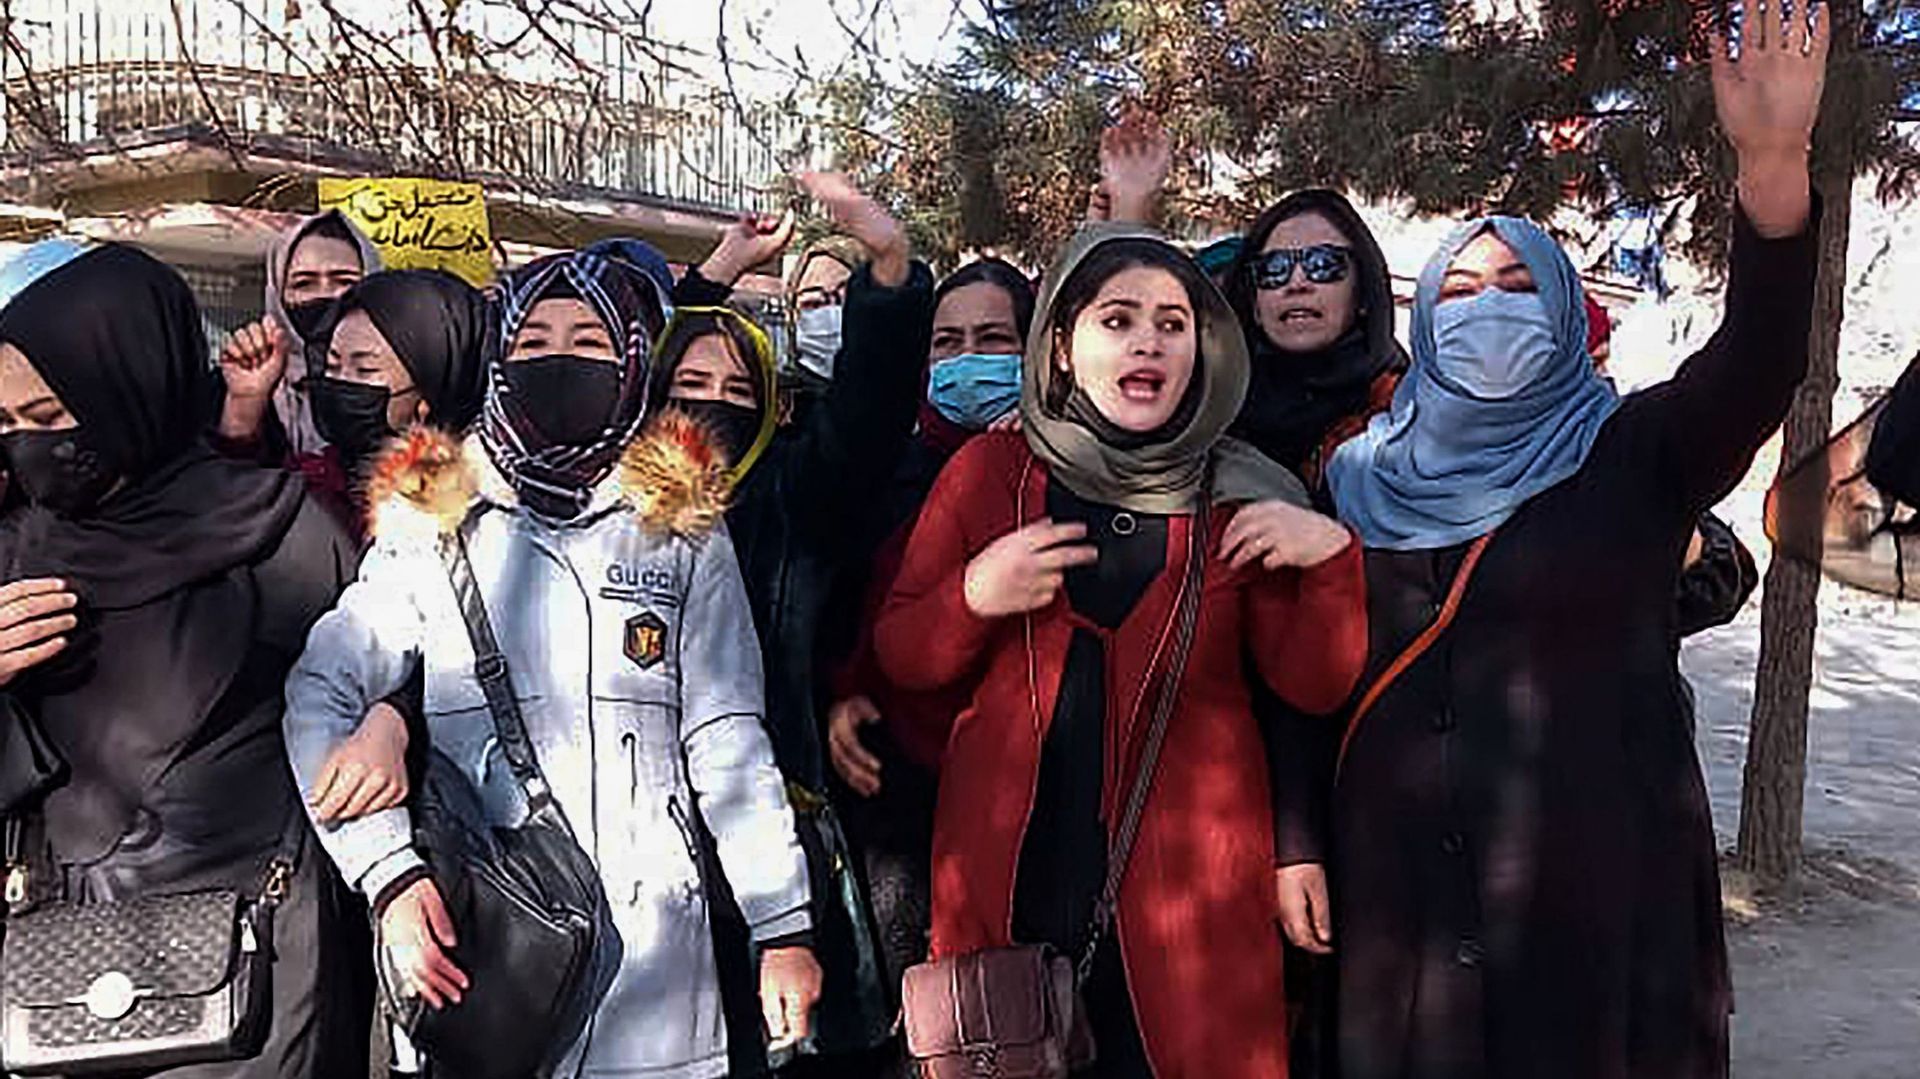 Des femmes afghanes scandent des slogans pour protester contre l’interdiction de l’enseignement universitaire pour les femmes, à Kaboul, le 22 décembre 2022. Un petit groupe de femmes afghanes a organisé une manifestation de défi à Kaboul le 22 décembre c